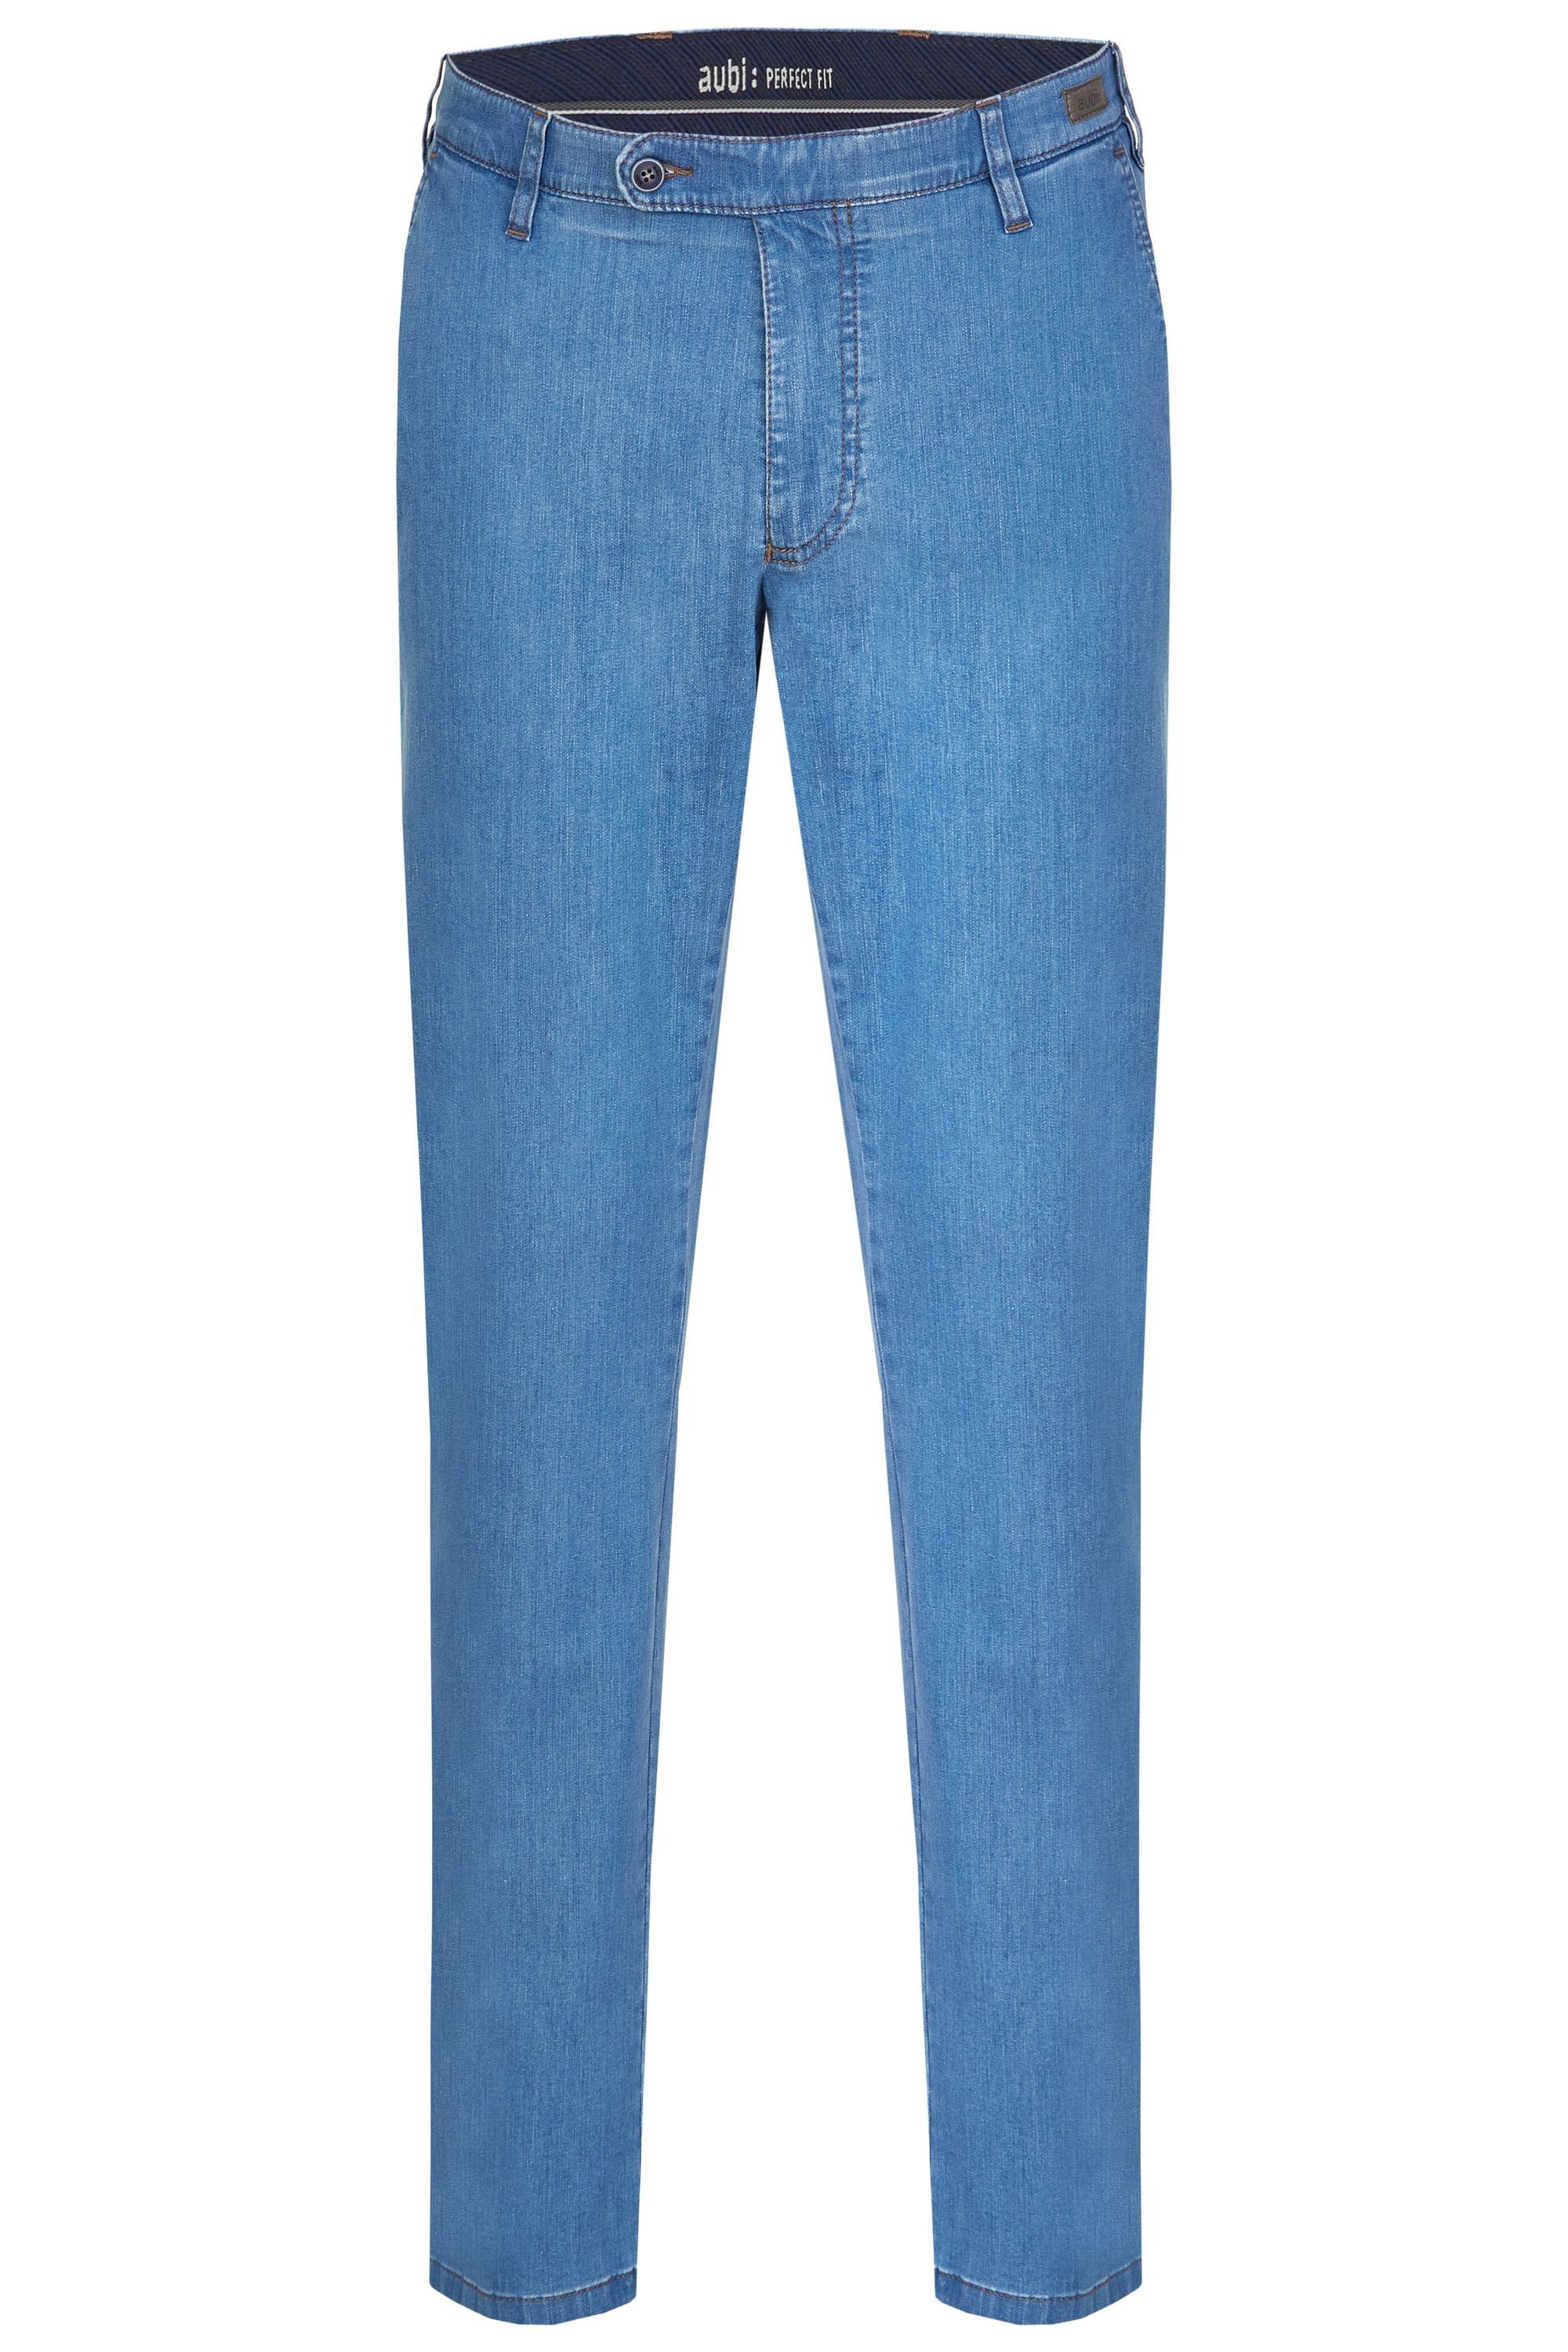 Fit aubi aubi: Sommer Modell (43) Bequeme bleached 526 Baumwolle Stretch aus Flex Hose Perfect Jeans Herren High Jeans